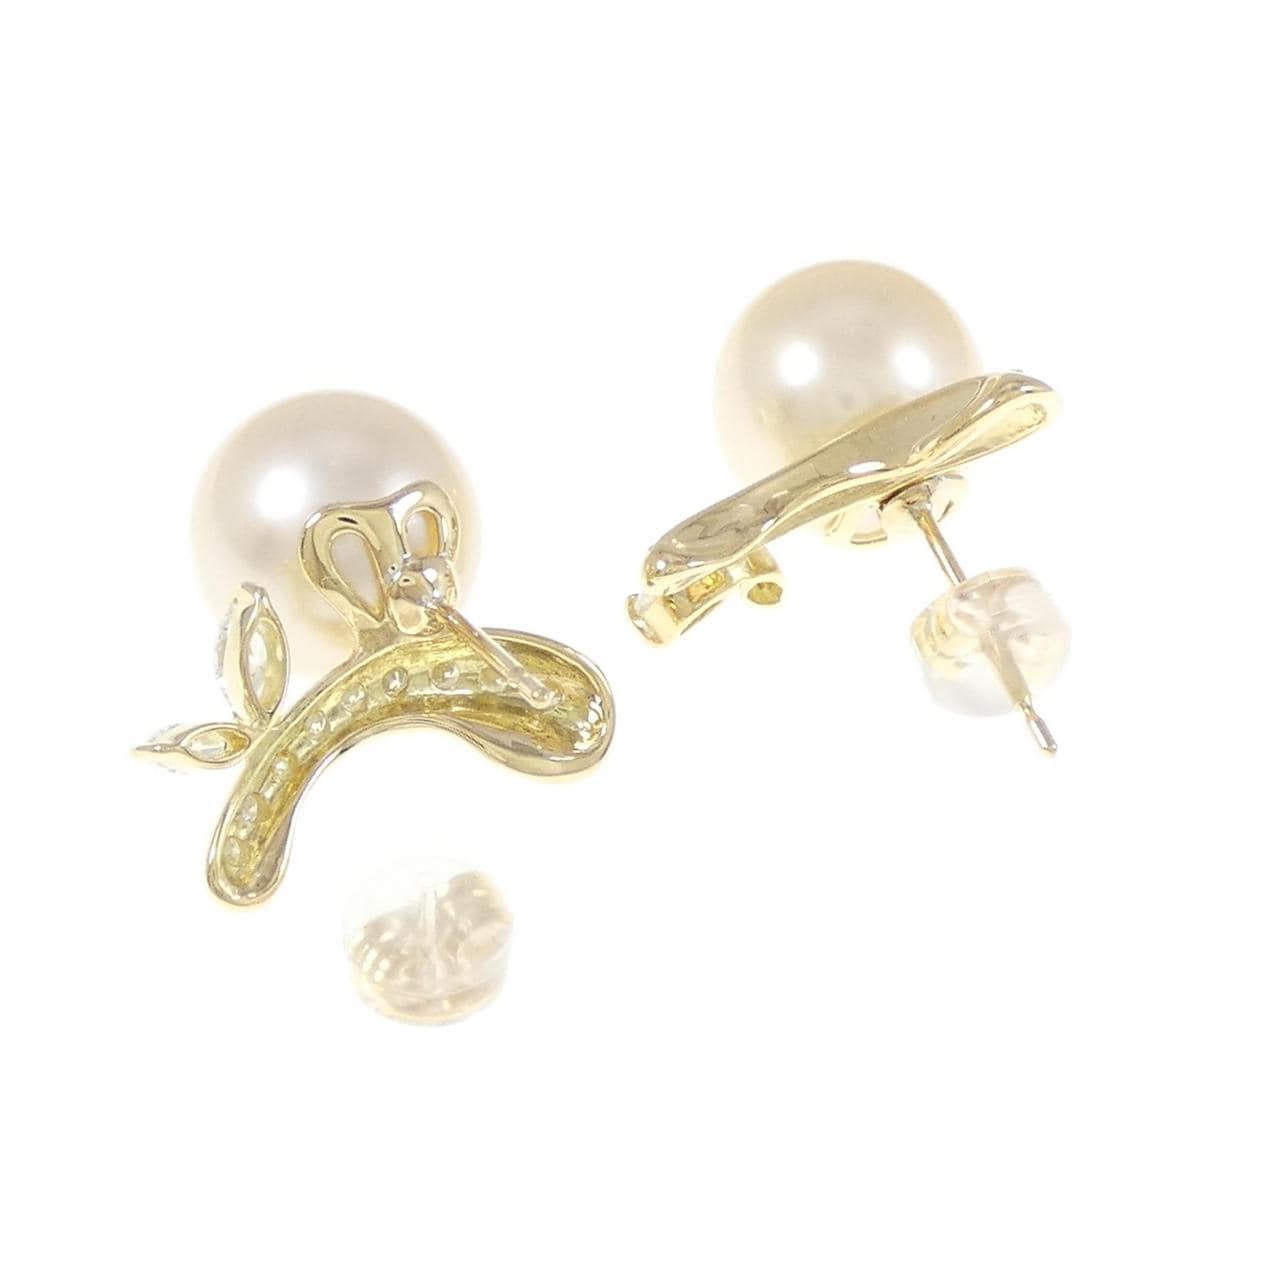 K18YG White Butterfly Pearl Earrings 10.7mm